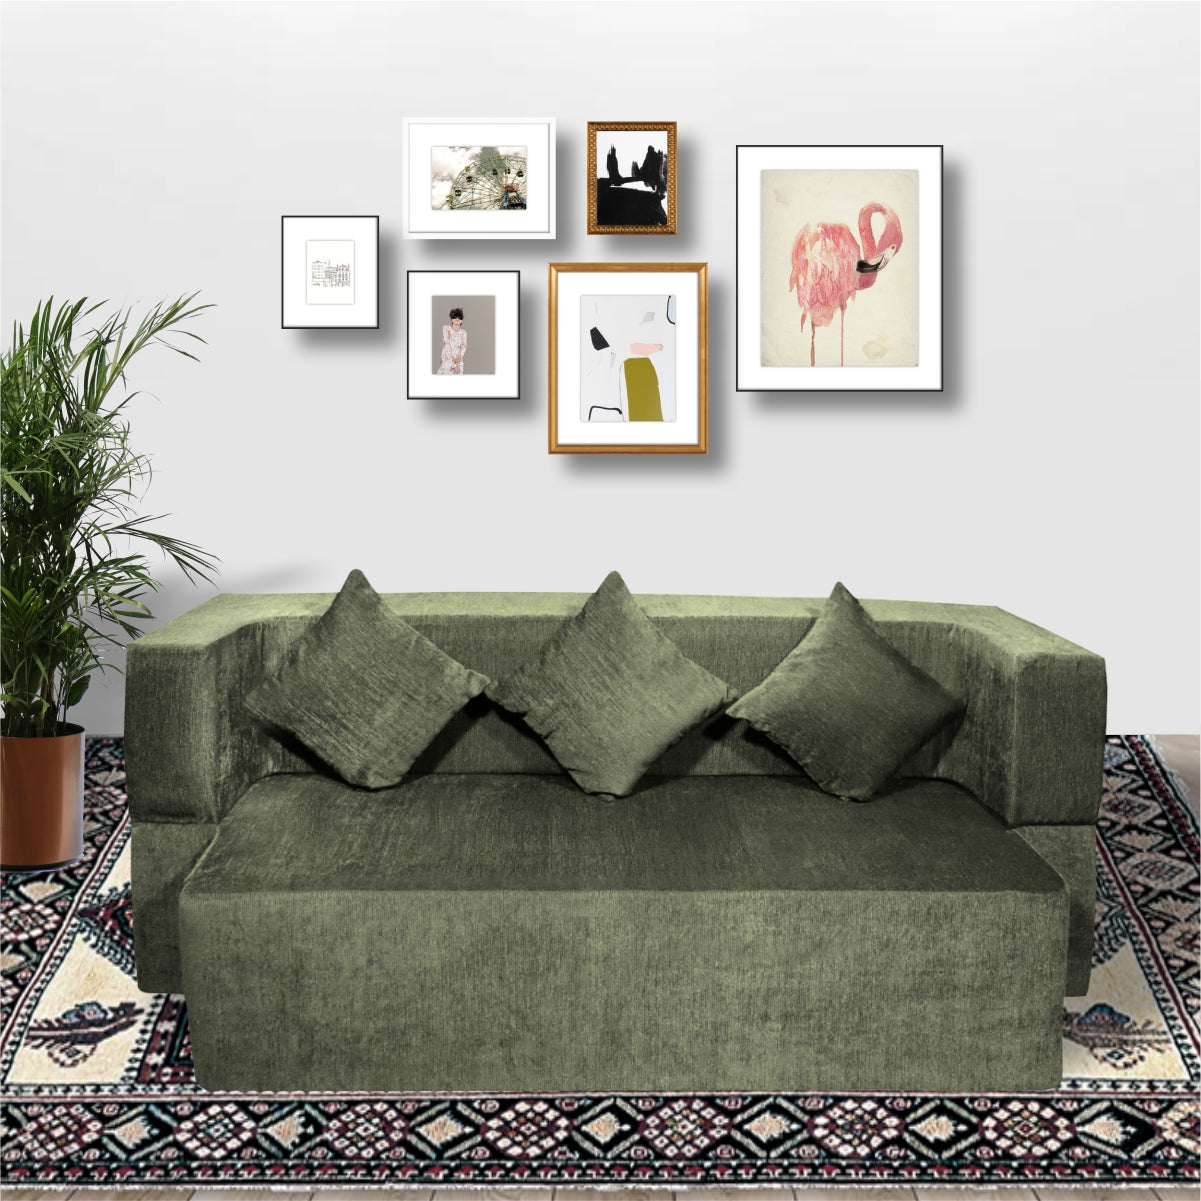 Cover of Emerald Green Chenille Molfino Fabric (72"x44"x14") FlipperX Sofa Bed